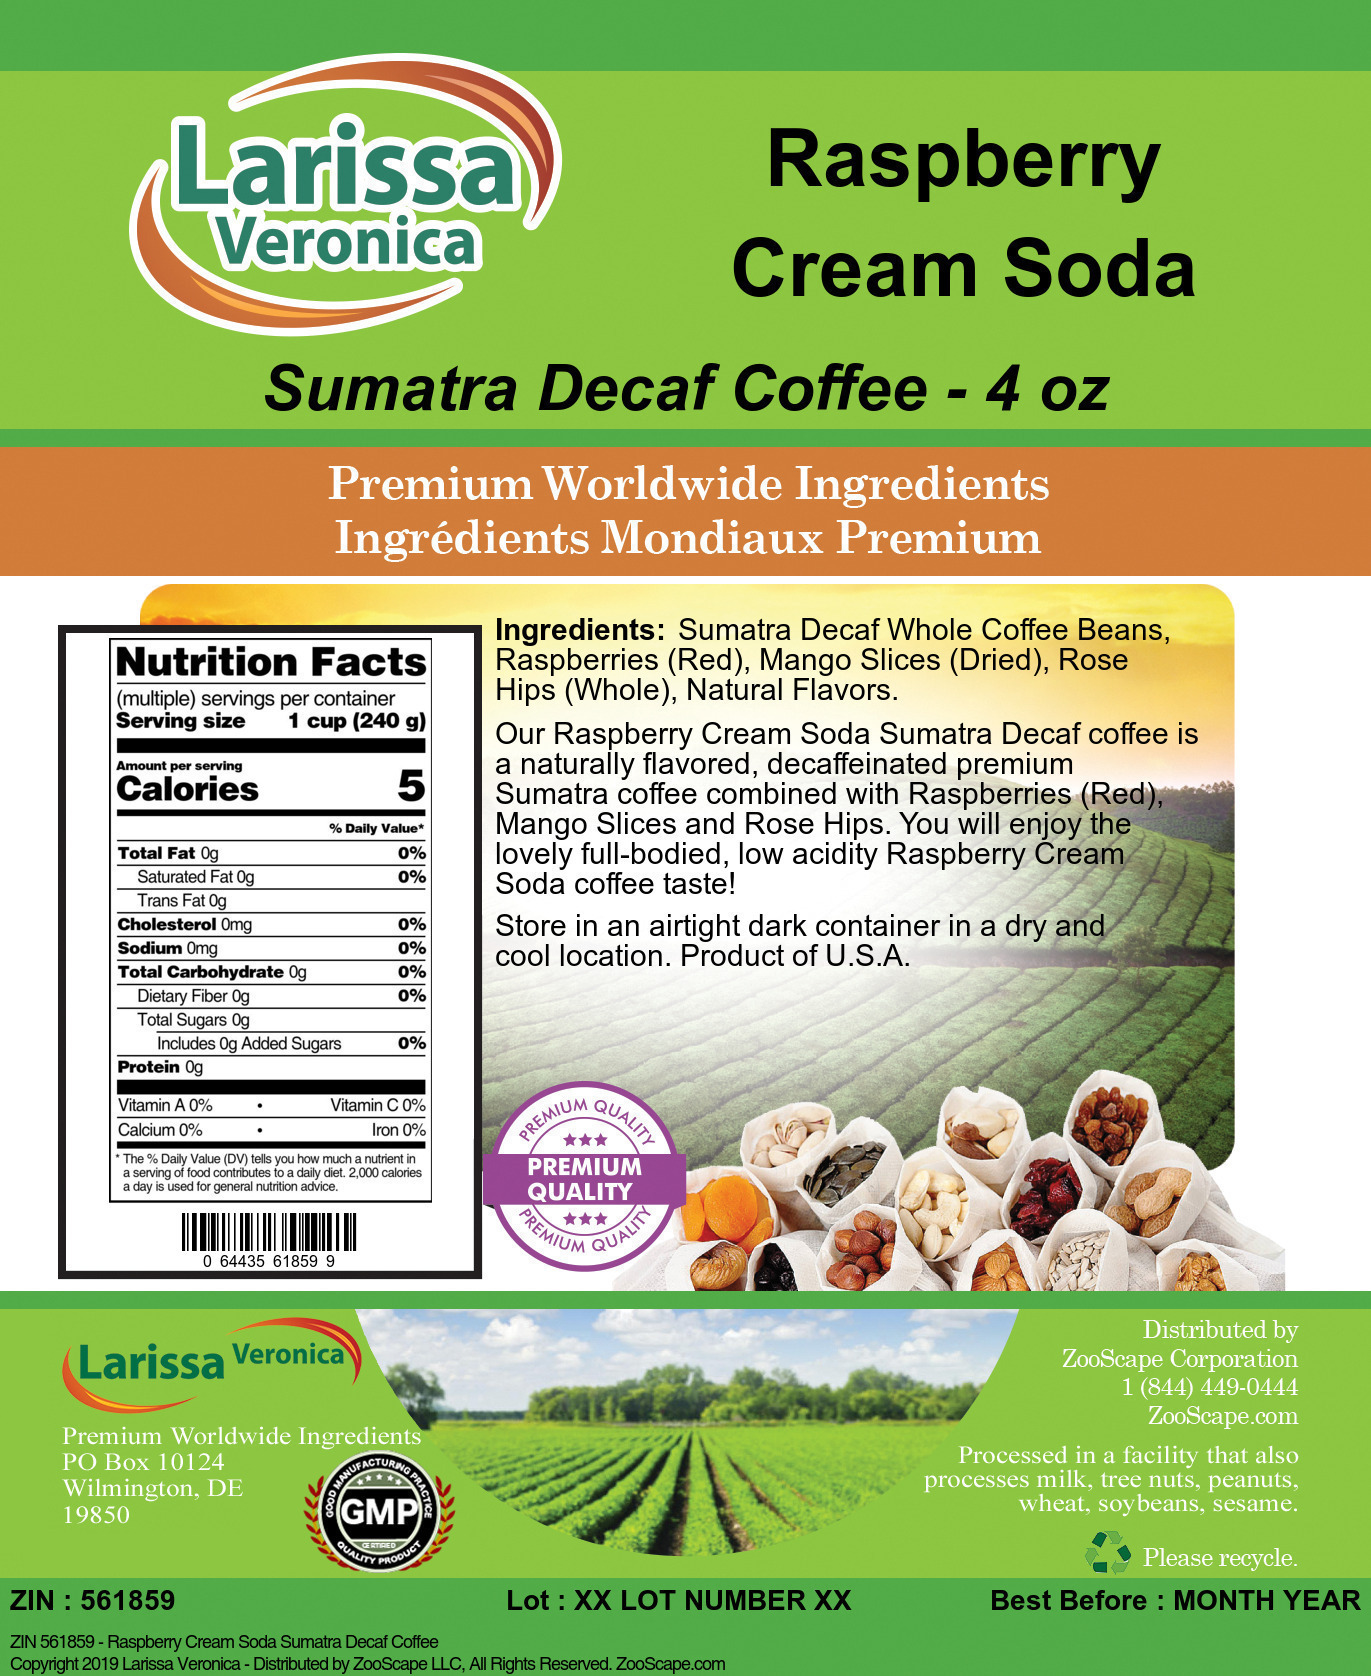 Raspberry Cream Soda Sumatra Decaf Coffee - Label